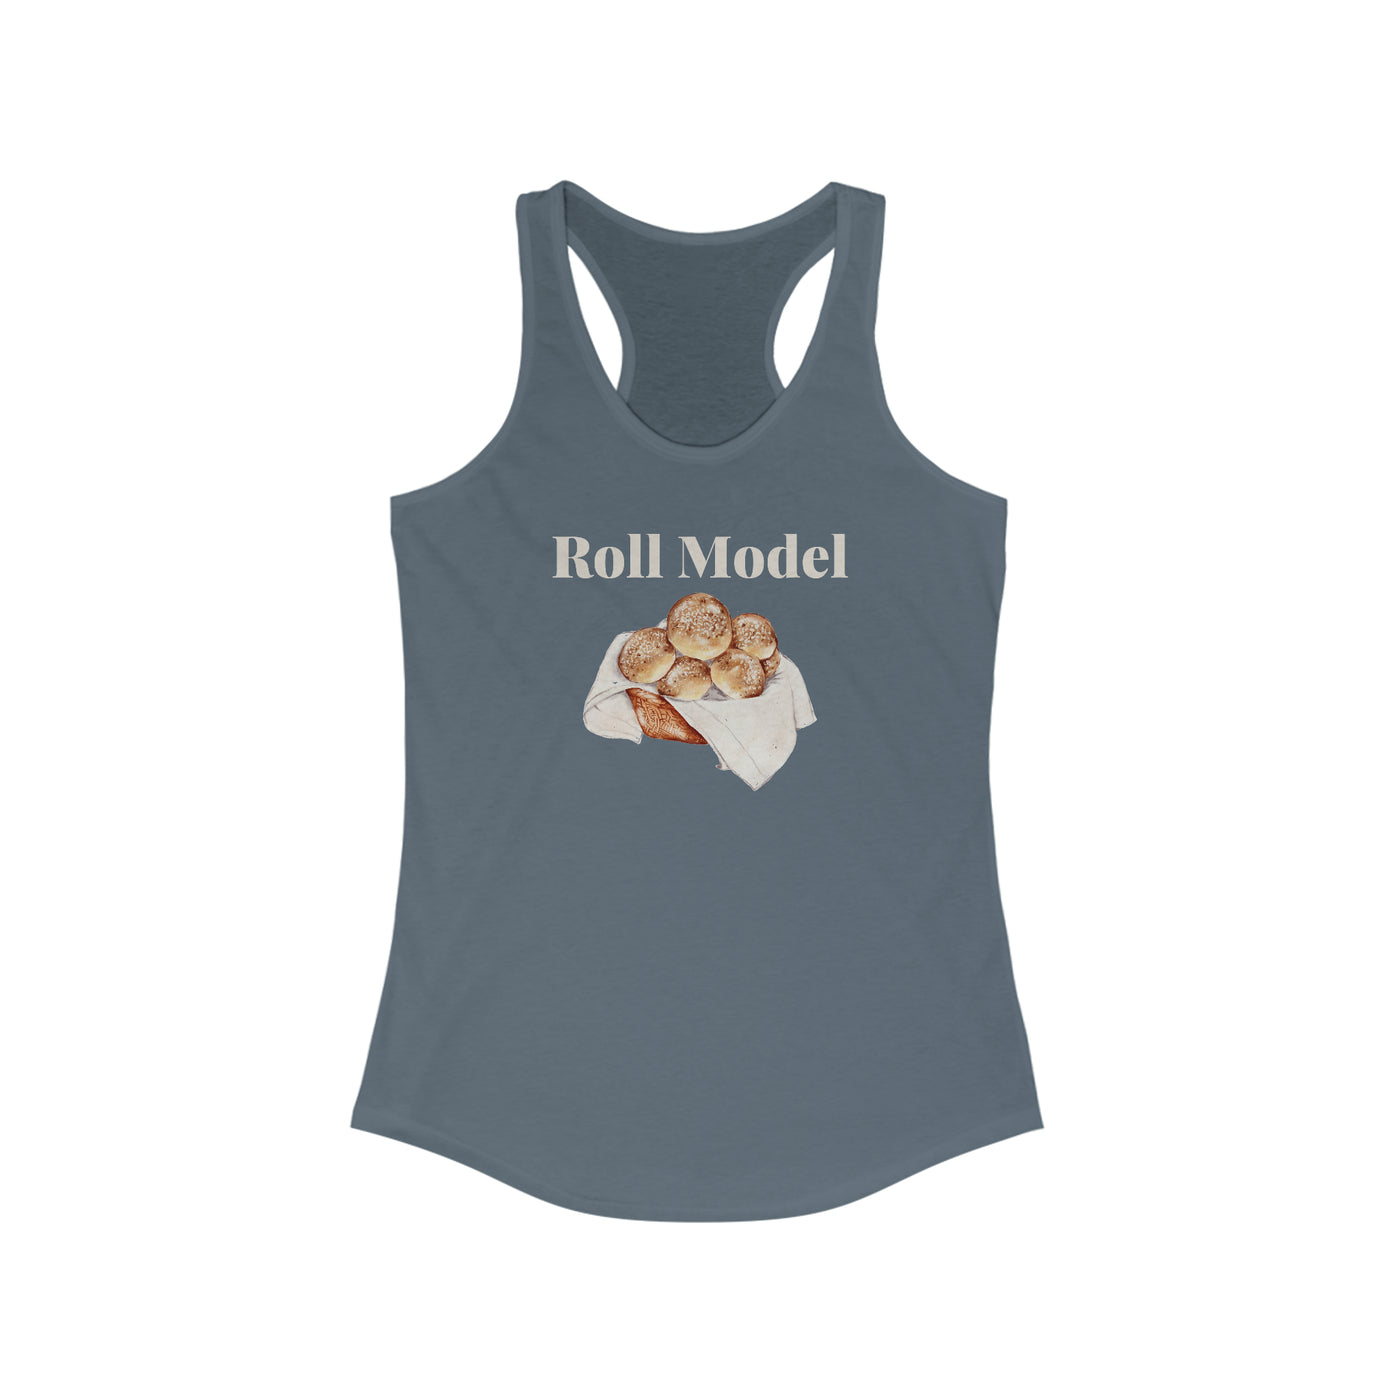 Roll Model Women's Racerback Tank